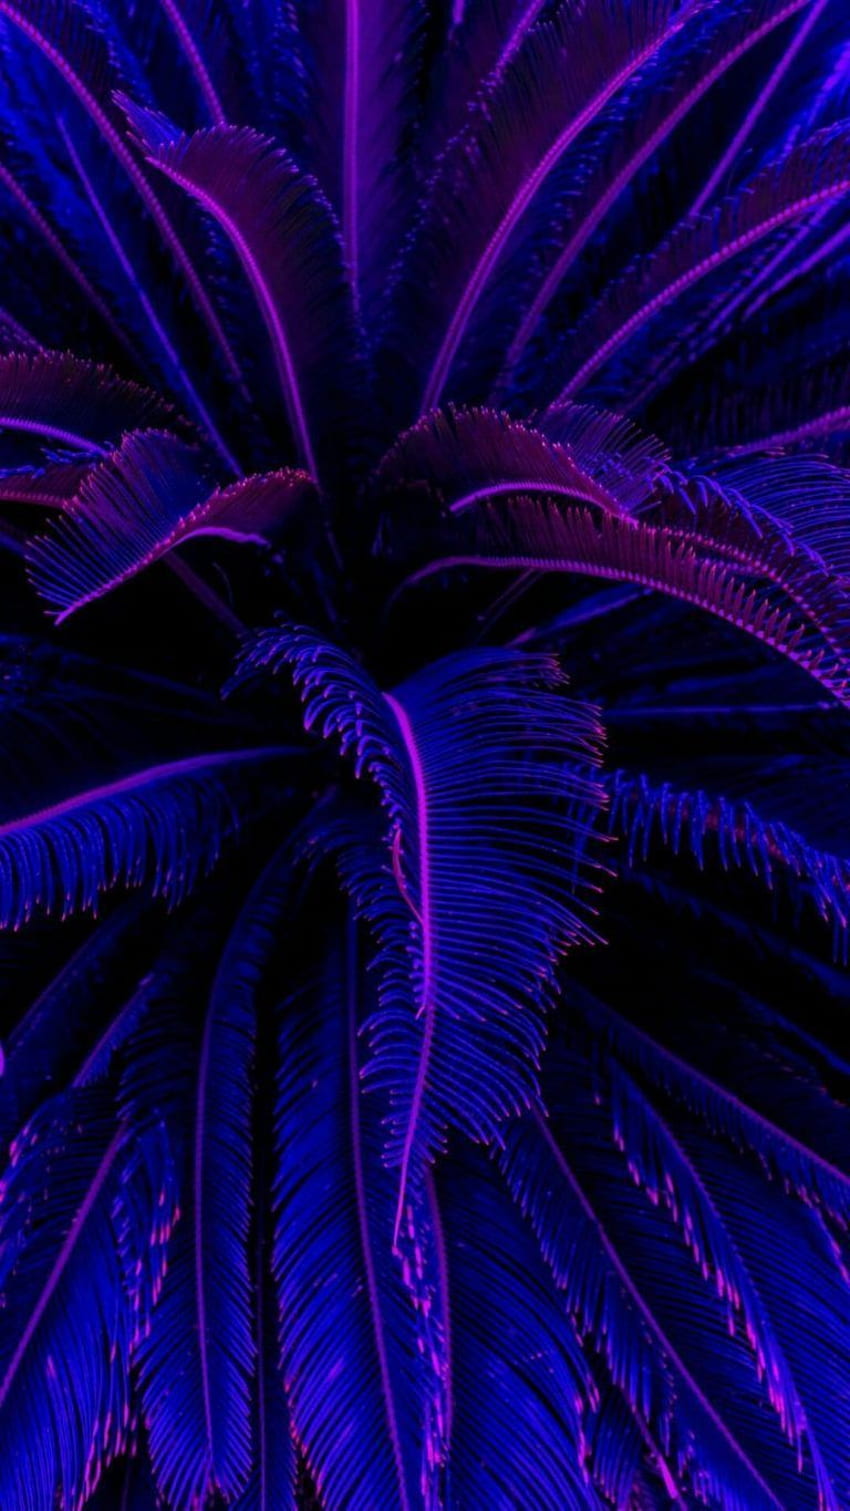 azul, morado, azul eléctrico, violeta, arte fractal, planta, iphone. Negro y azul, Iphone azul, Estética púrpura oscuro fondo de pantalla del teléfono